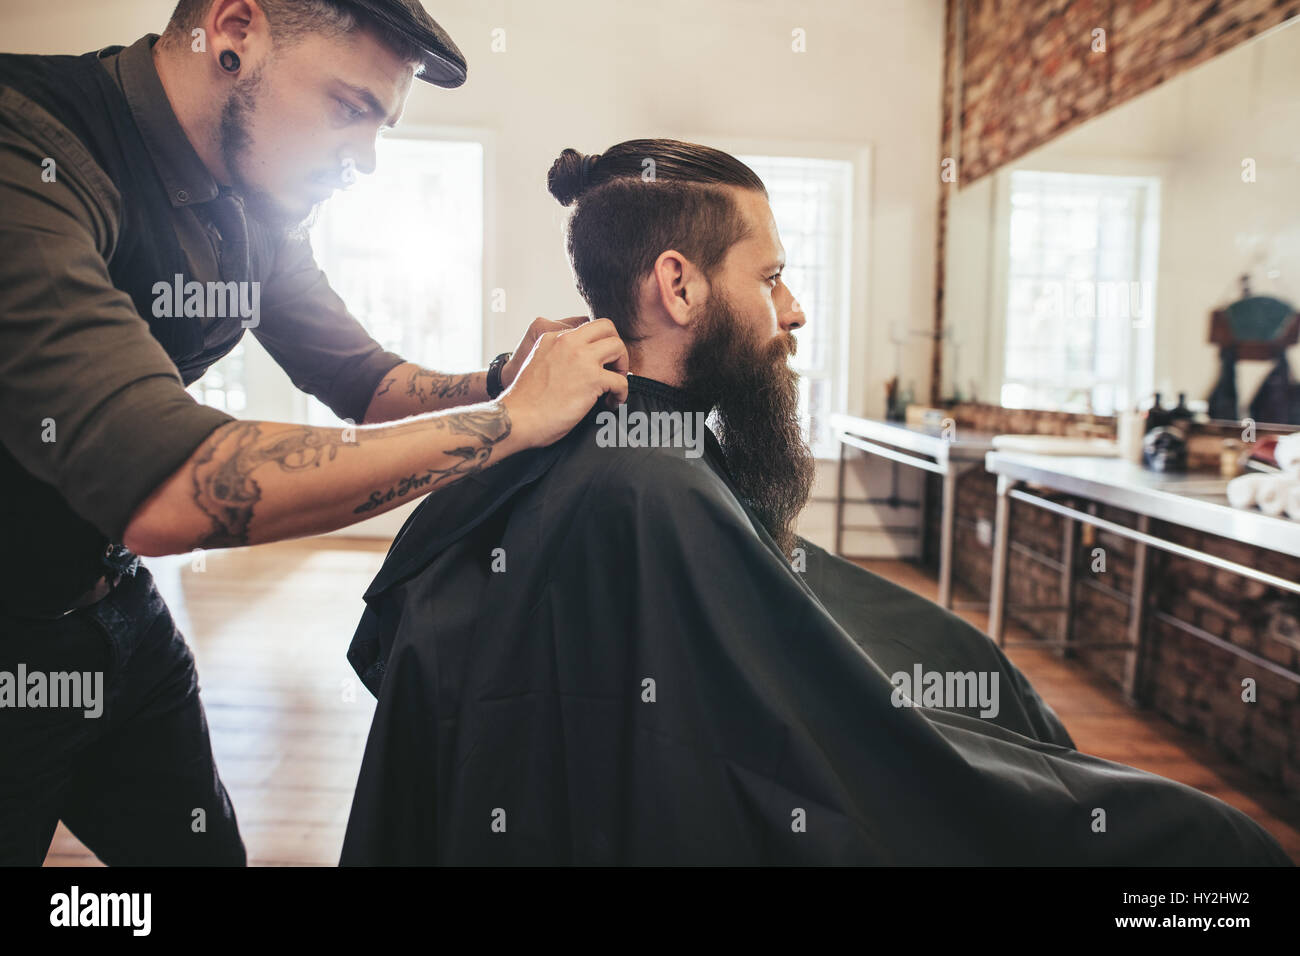 Friseur Client im Barbershop schneiden Haare Cape anziehen. Mann mit Bart sitzt im Friseursalon. Stockfoto